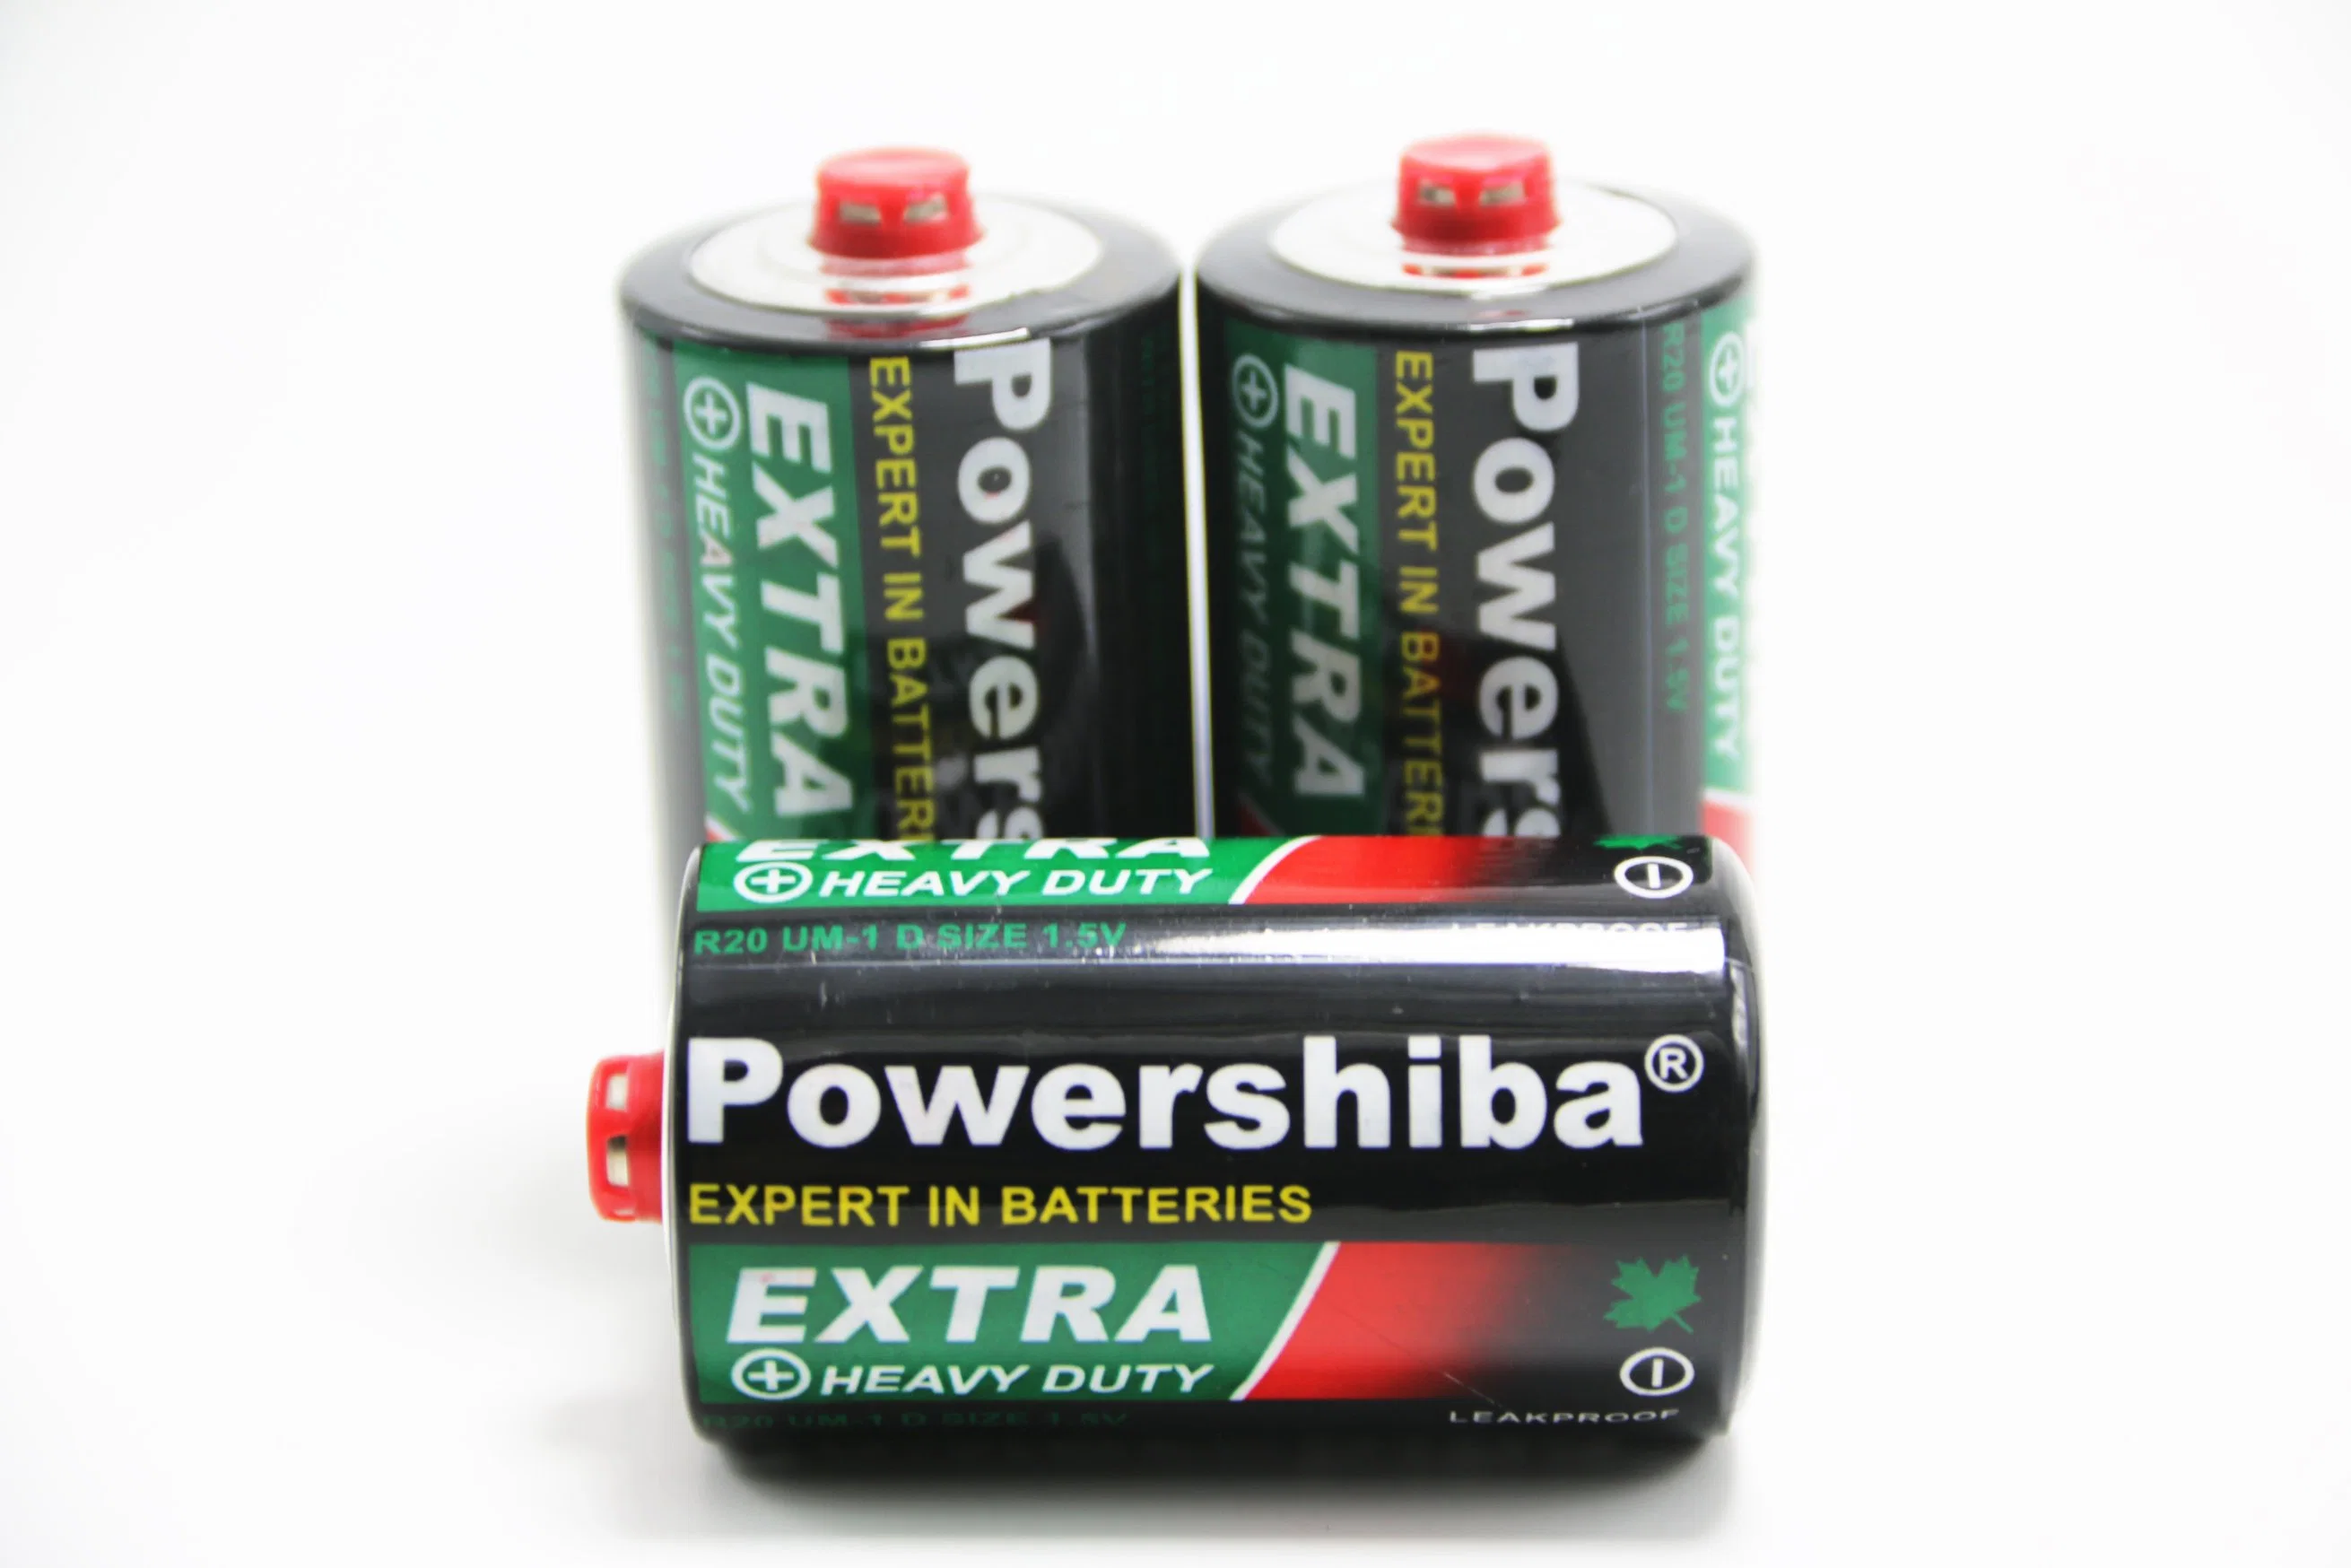 Haute qualité D R20 UM-1 Batterie zinc-carbone R201p 1,5V D Taille Non-Rechargeable primaire en cellule sèche à usage intense de la batterie Ultra